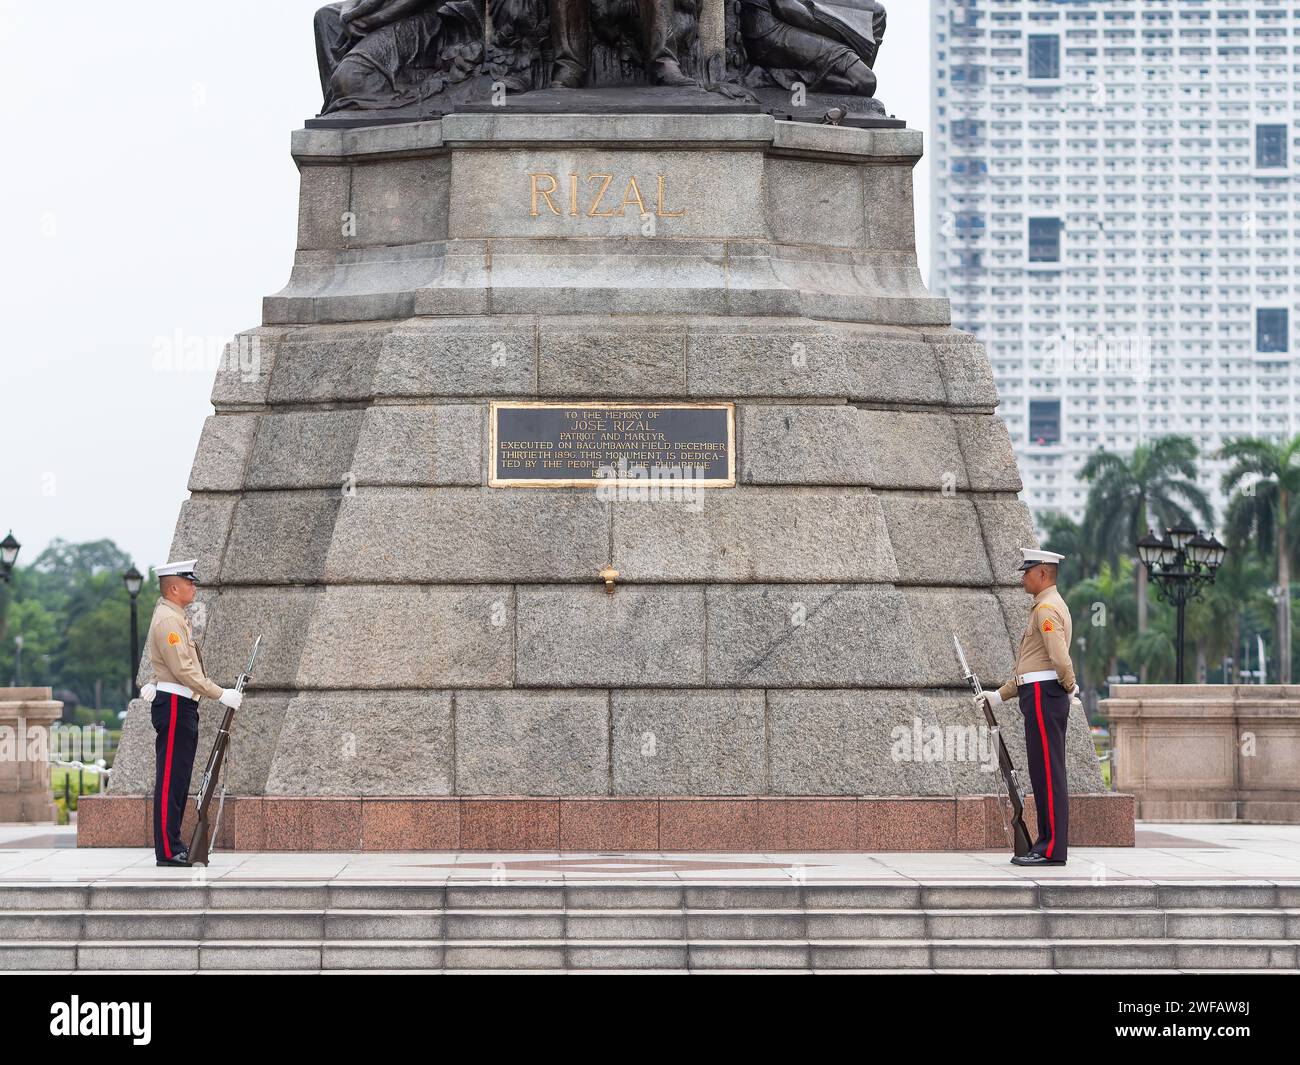 Manille, Philippines - 8 août 2017 : deux soldats gardent le monument Jose Rizal au parc Rizal le long du boulevard Roxas à Manille, Philippines. Banque D'Images